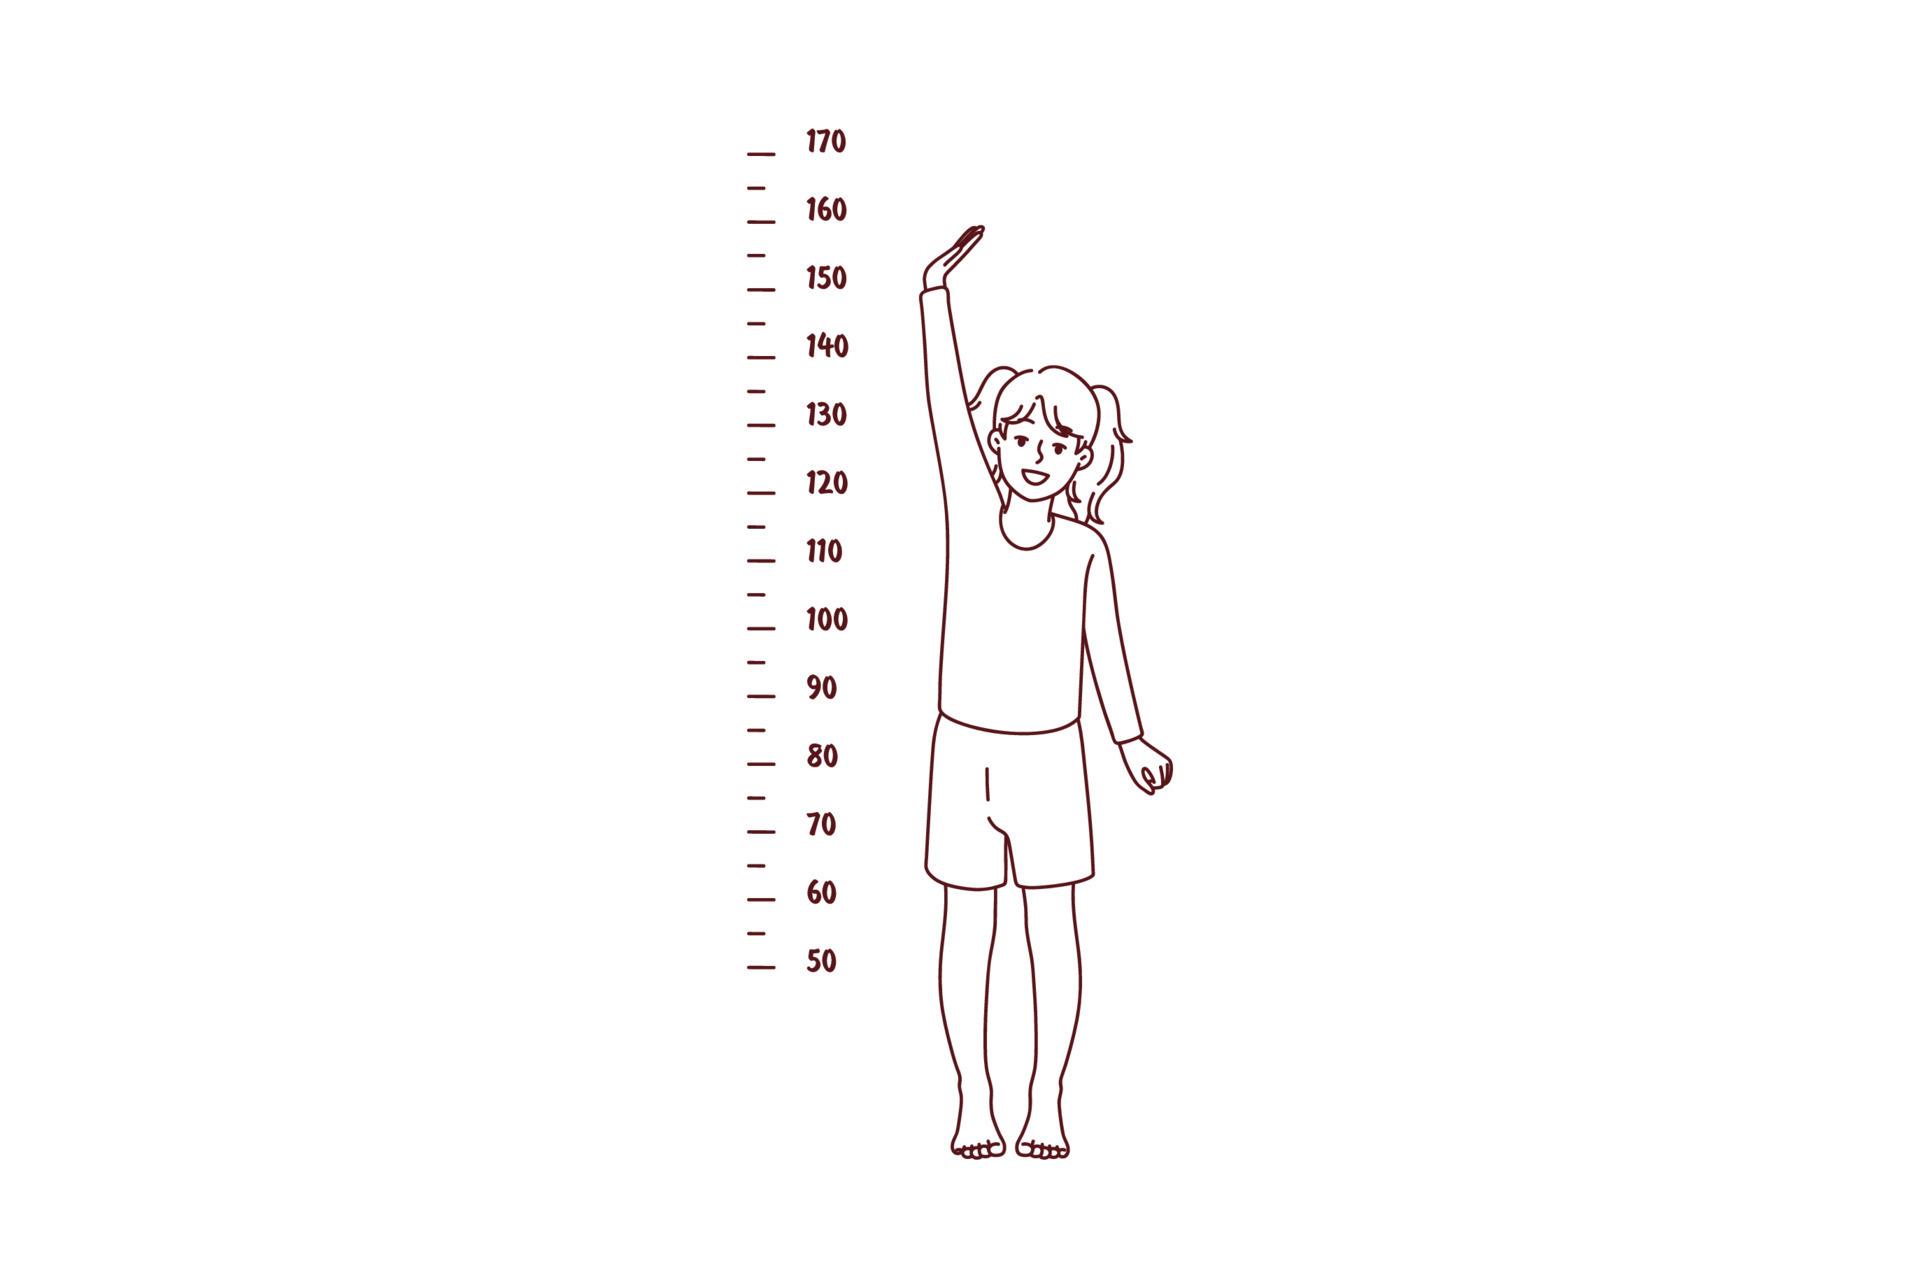 Height show. Шкала для измерения роста человека. Мальчик измерение роста. Ребёнок рисунок меряет рост и вес. Мальчик меряет рост рисунок.